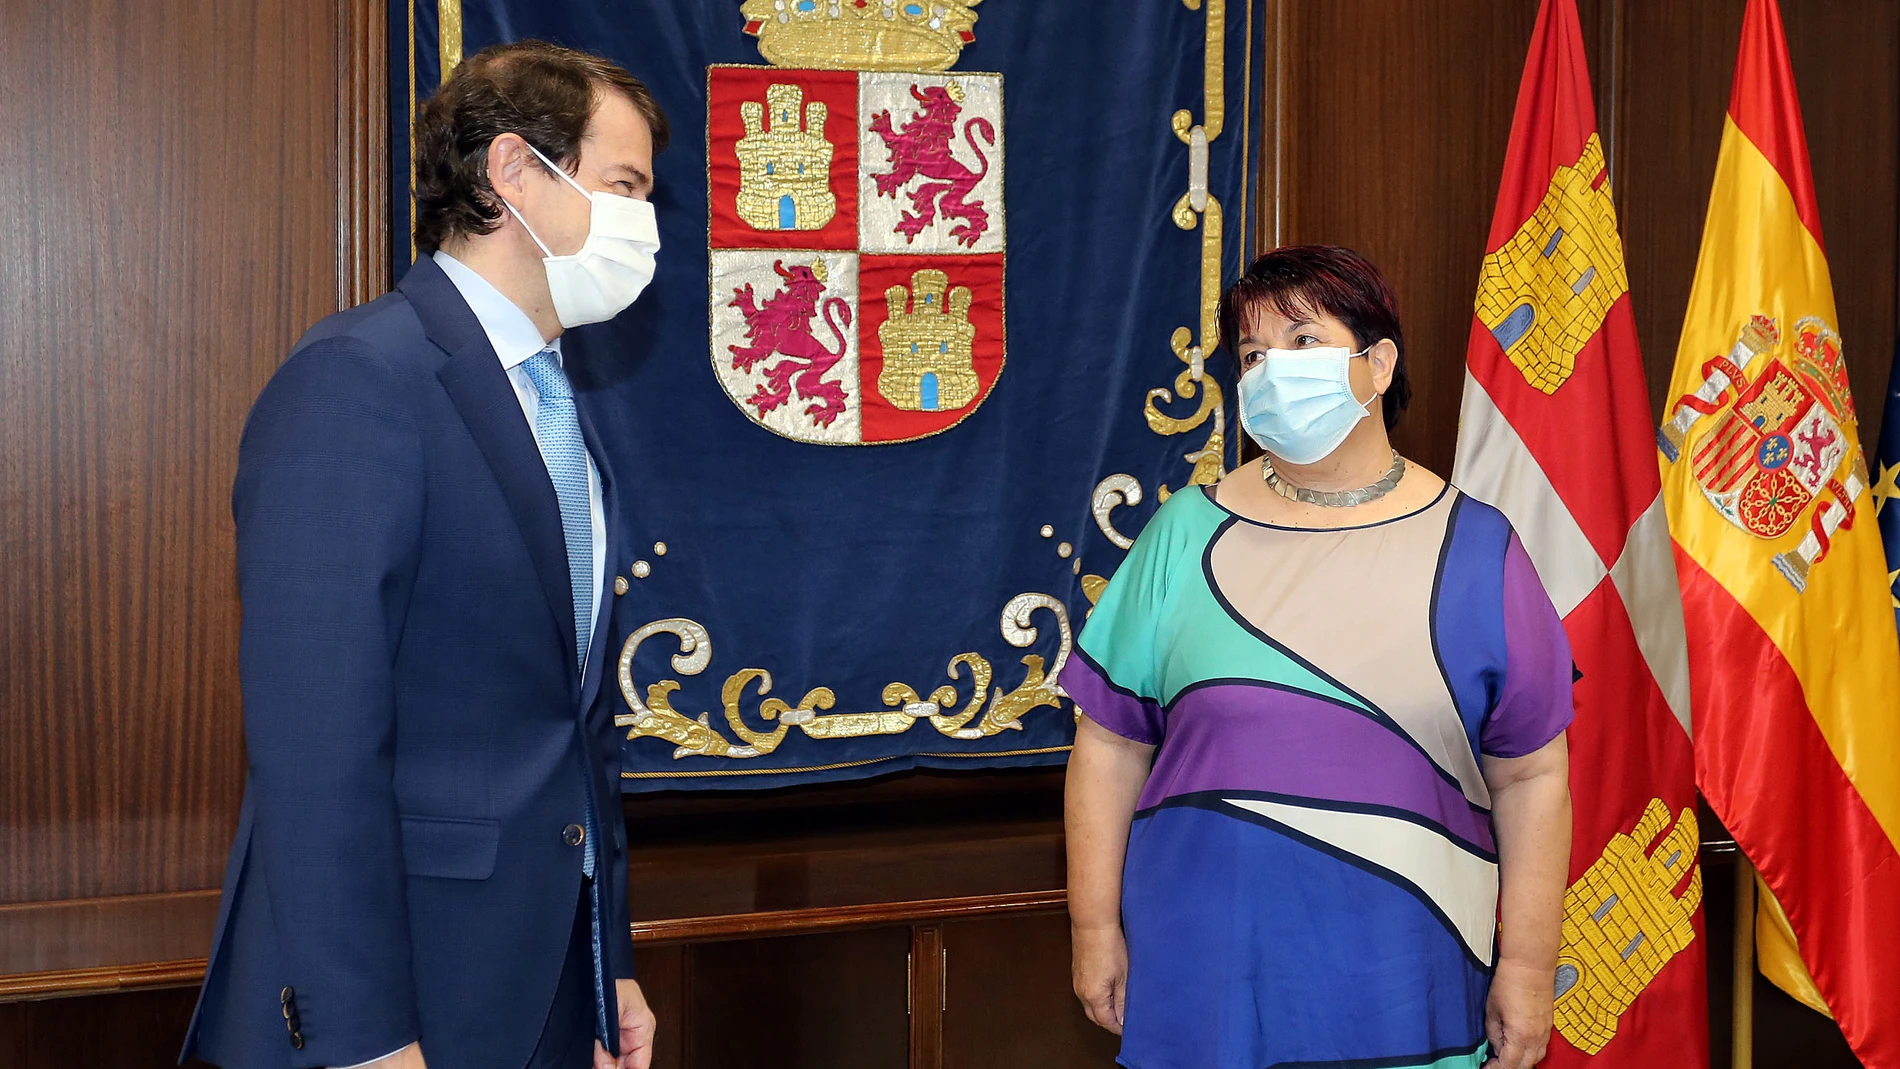 El presidente de la Junta de Castilla y León, Alfonso Fernández Mañueco, se reúne con la alcaldesa de Segovia, Clara Luquero, para tratar la construcción de una nueva infraestructura hospitalaria